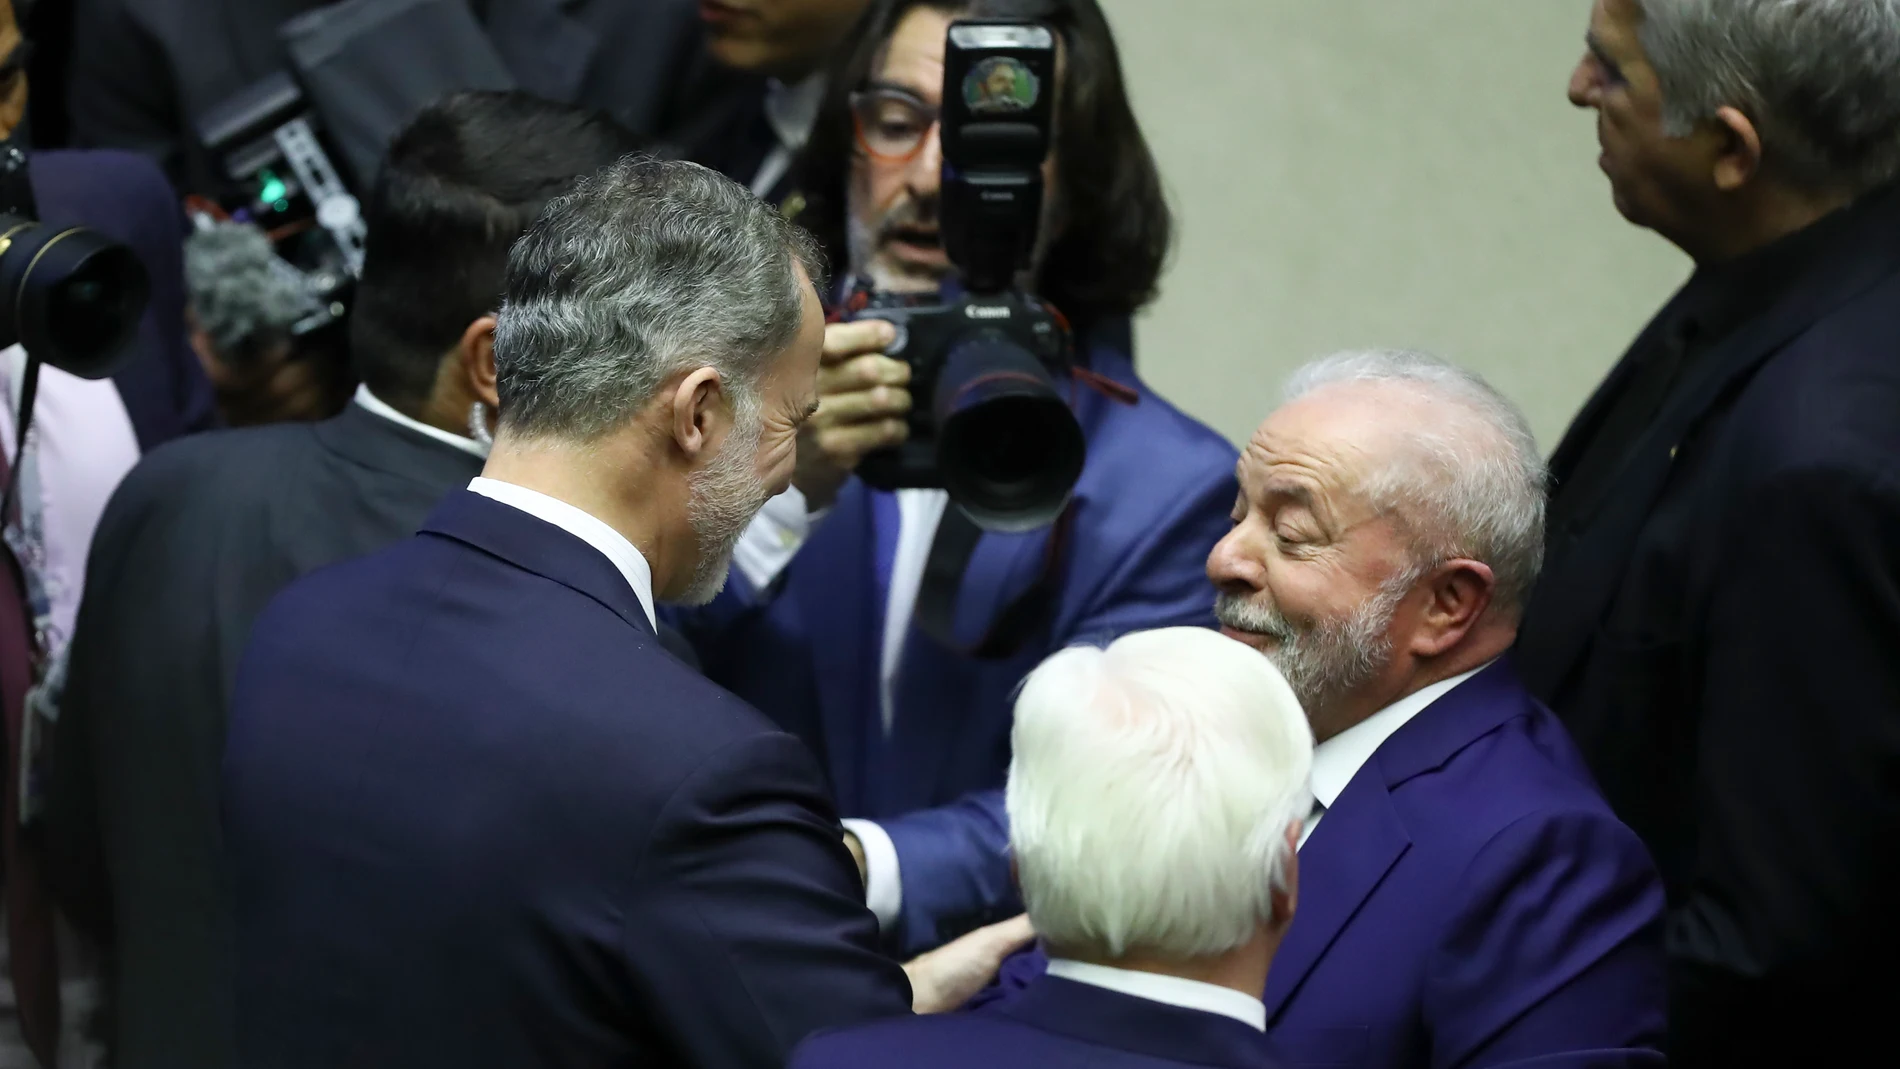 El rey de España, Felipe VI (i), saluda al nuevo presidente de Brasil, Luiz Inácio Lula da Silva, tras su ceremonia de investidura en el Parlamento hoy, en Brasília